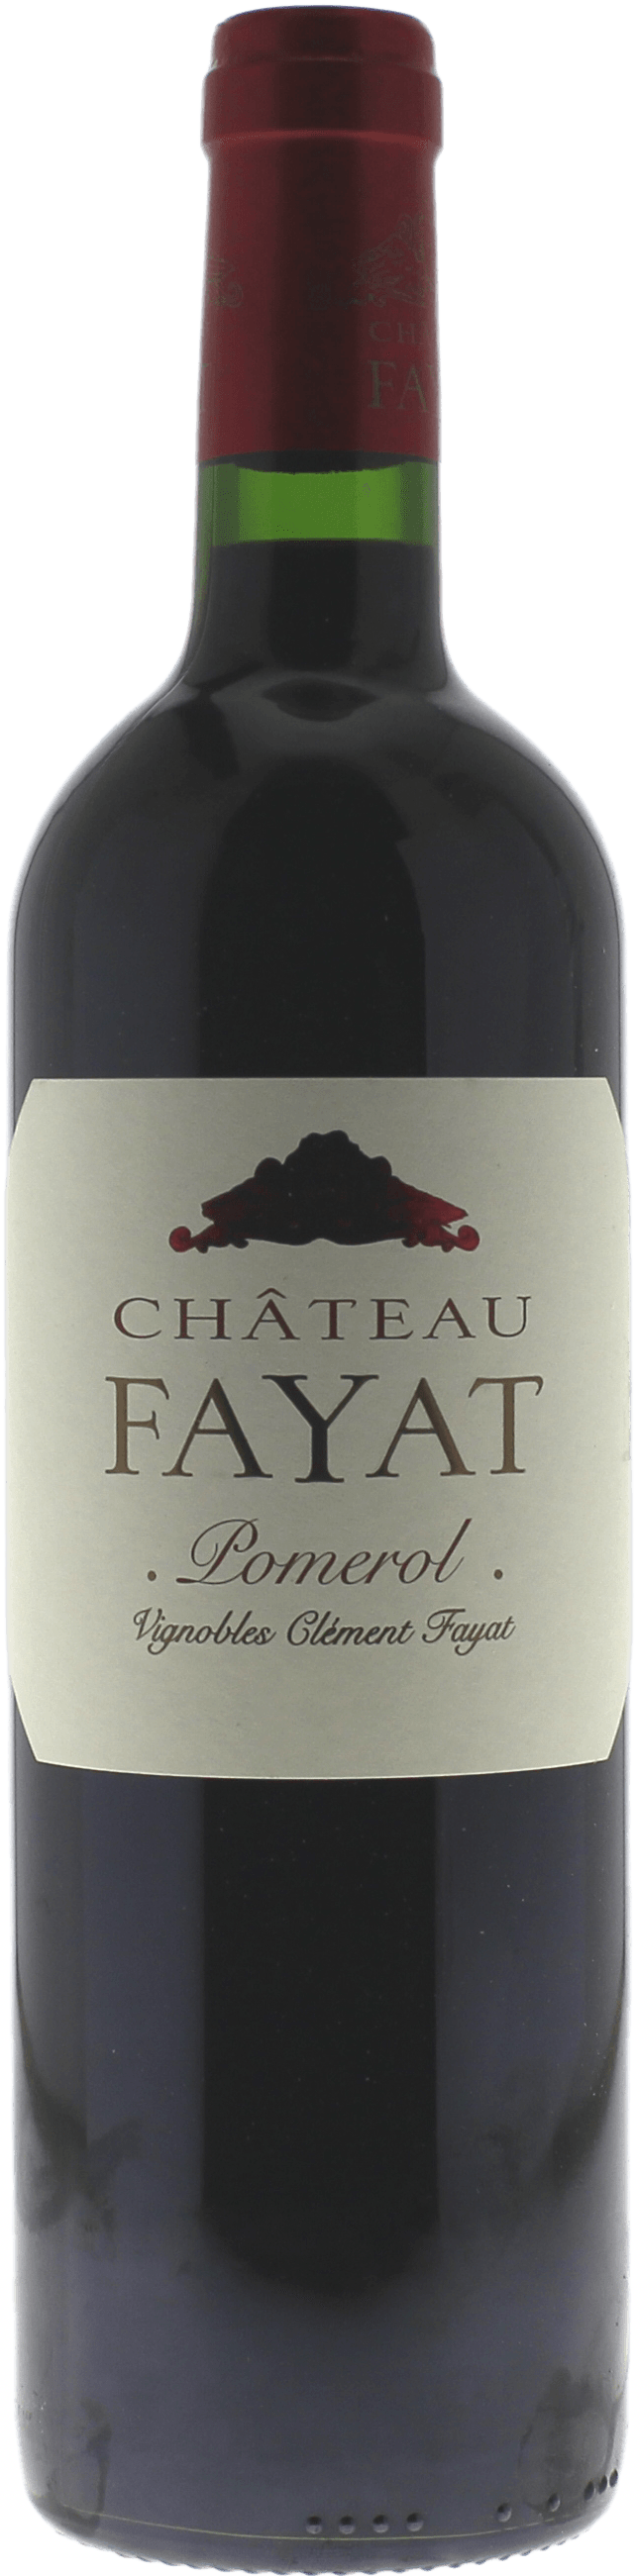 Fayat 2012  Pomerol, Bordeaux rouge